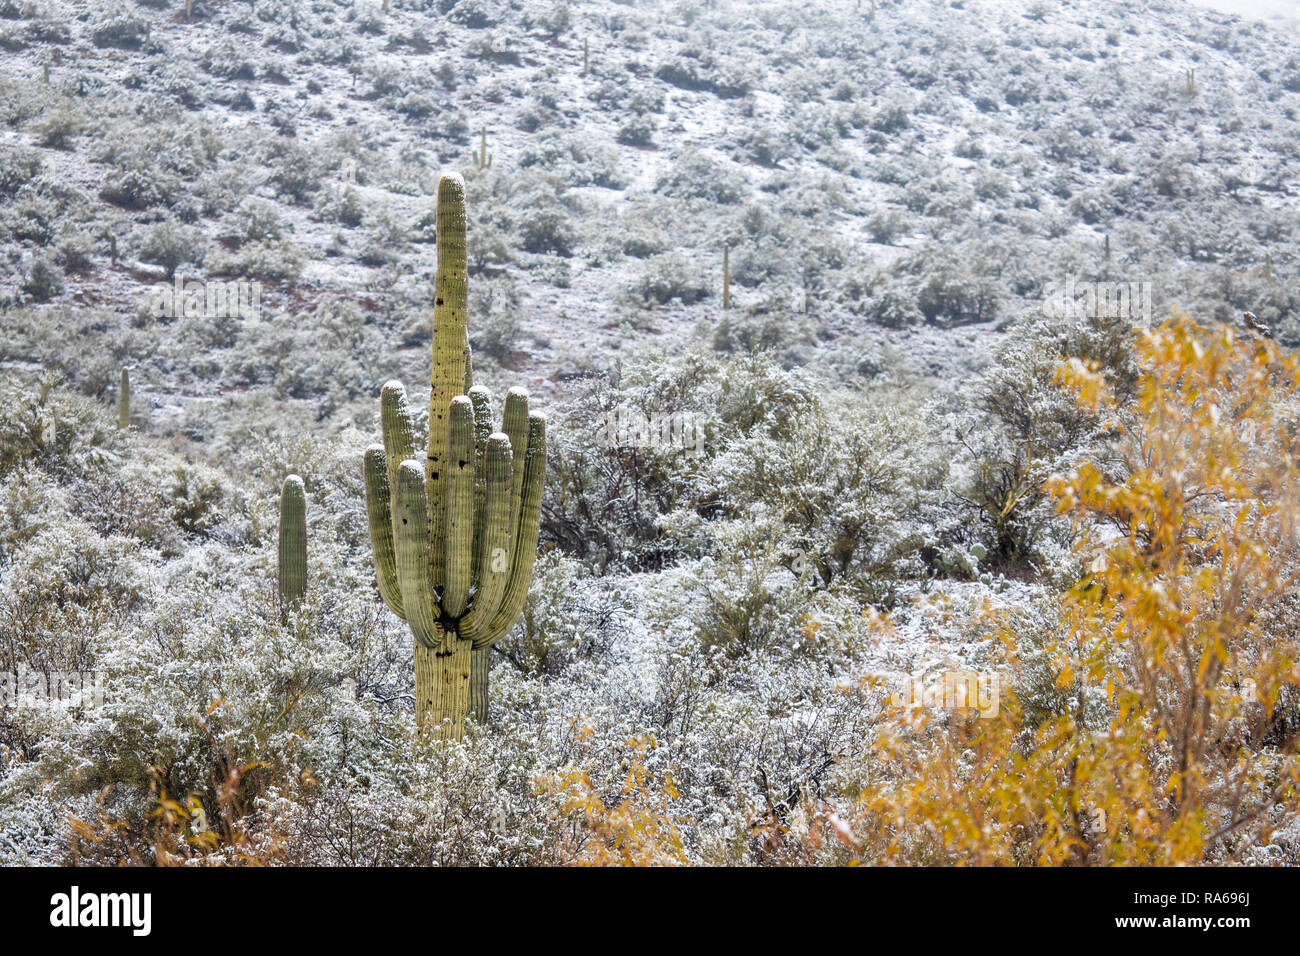 La neve cade nel deserto dell'Arizona ad altitudini basse fino a 2.000 piedi, a nord di Phoenix come una fredda tempesta invernale spostata attraverso l'area di Bumble Bee, Arizona, Stati Uniti Foto Stock